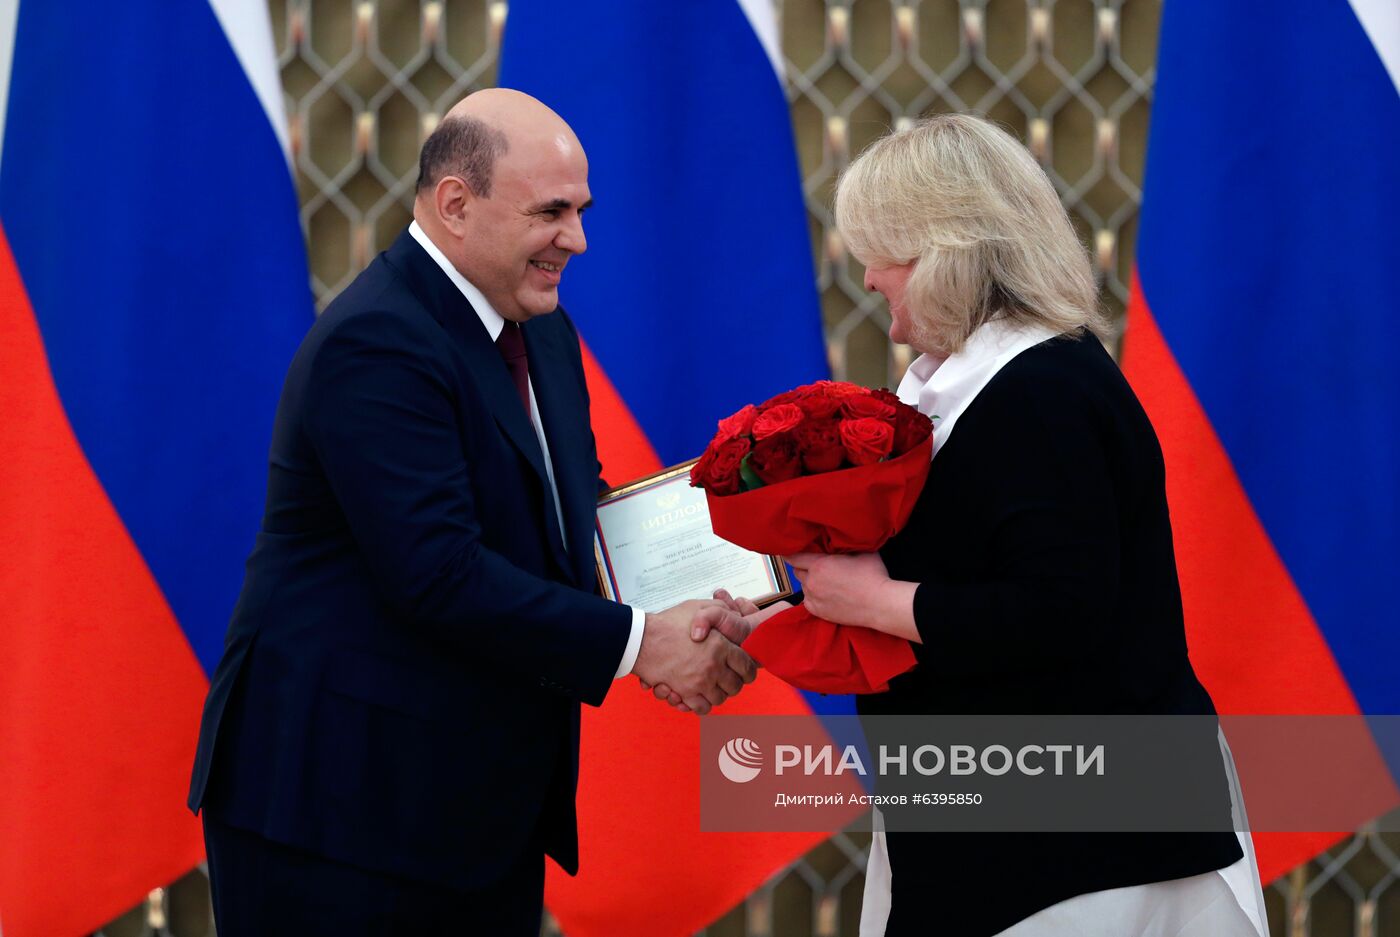  Премьер-министр РФ М. Мишустин вручил премии правительства РФ 2020 года в области науки и техники 